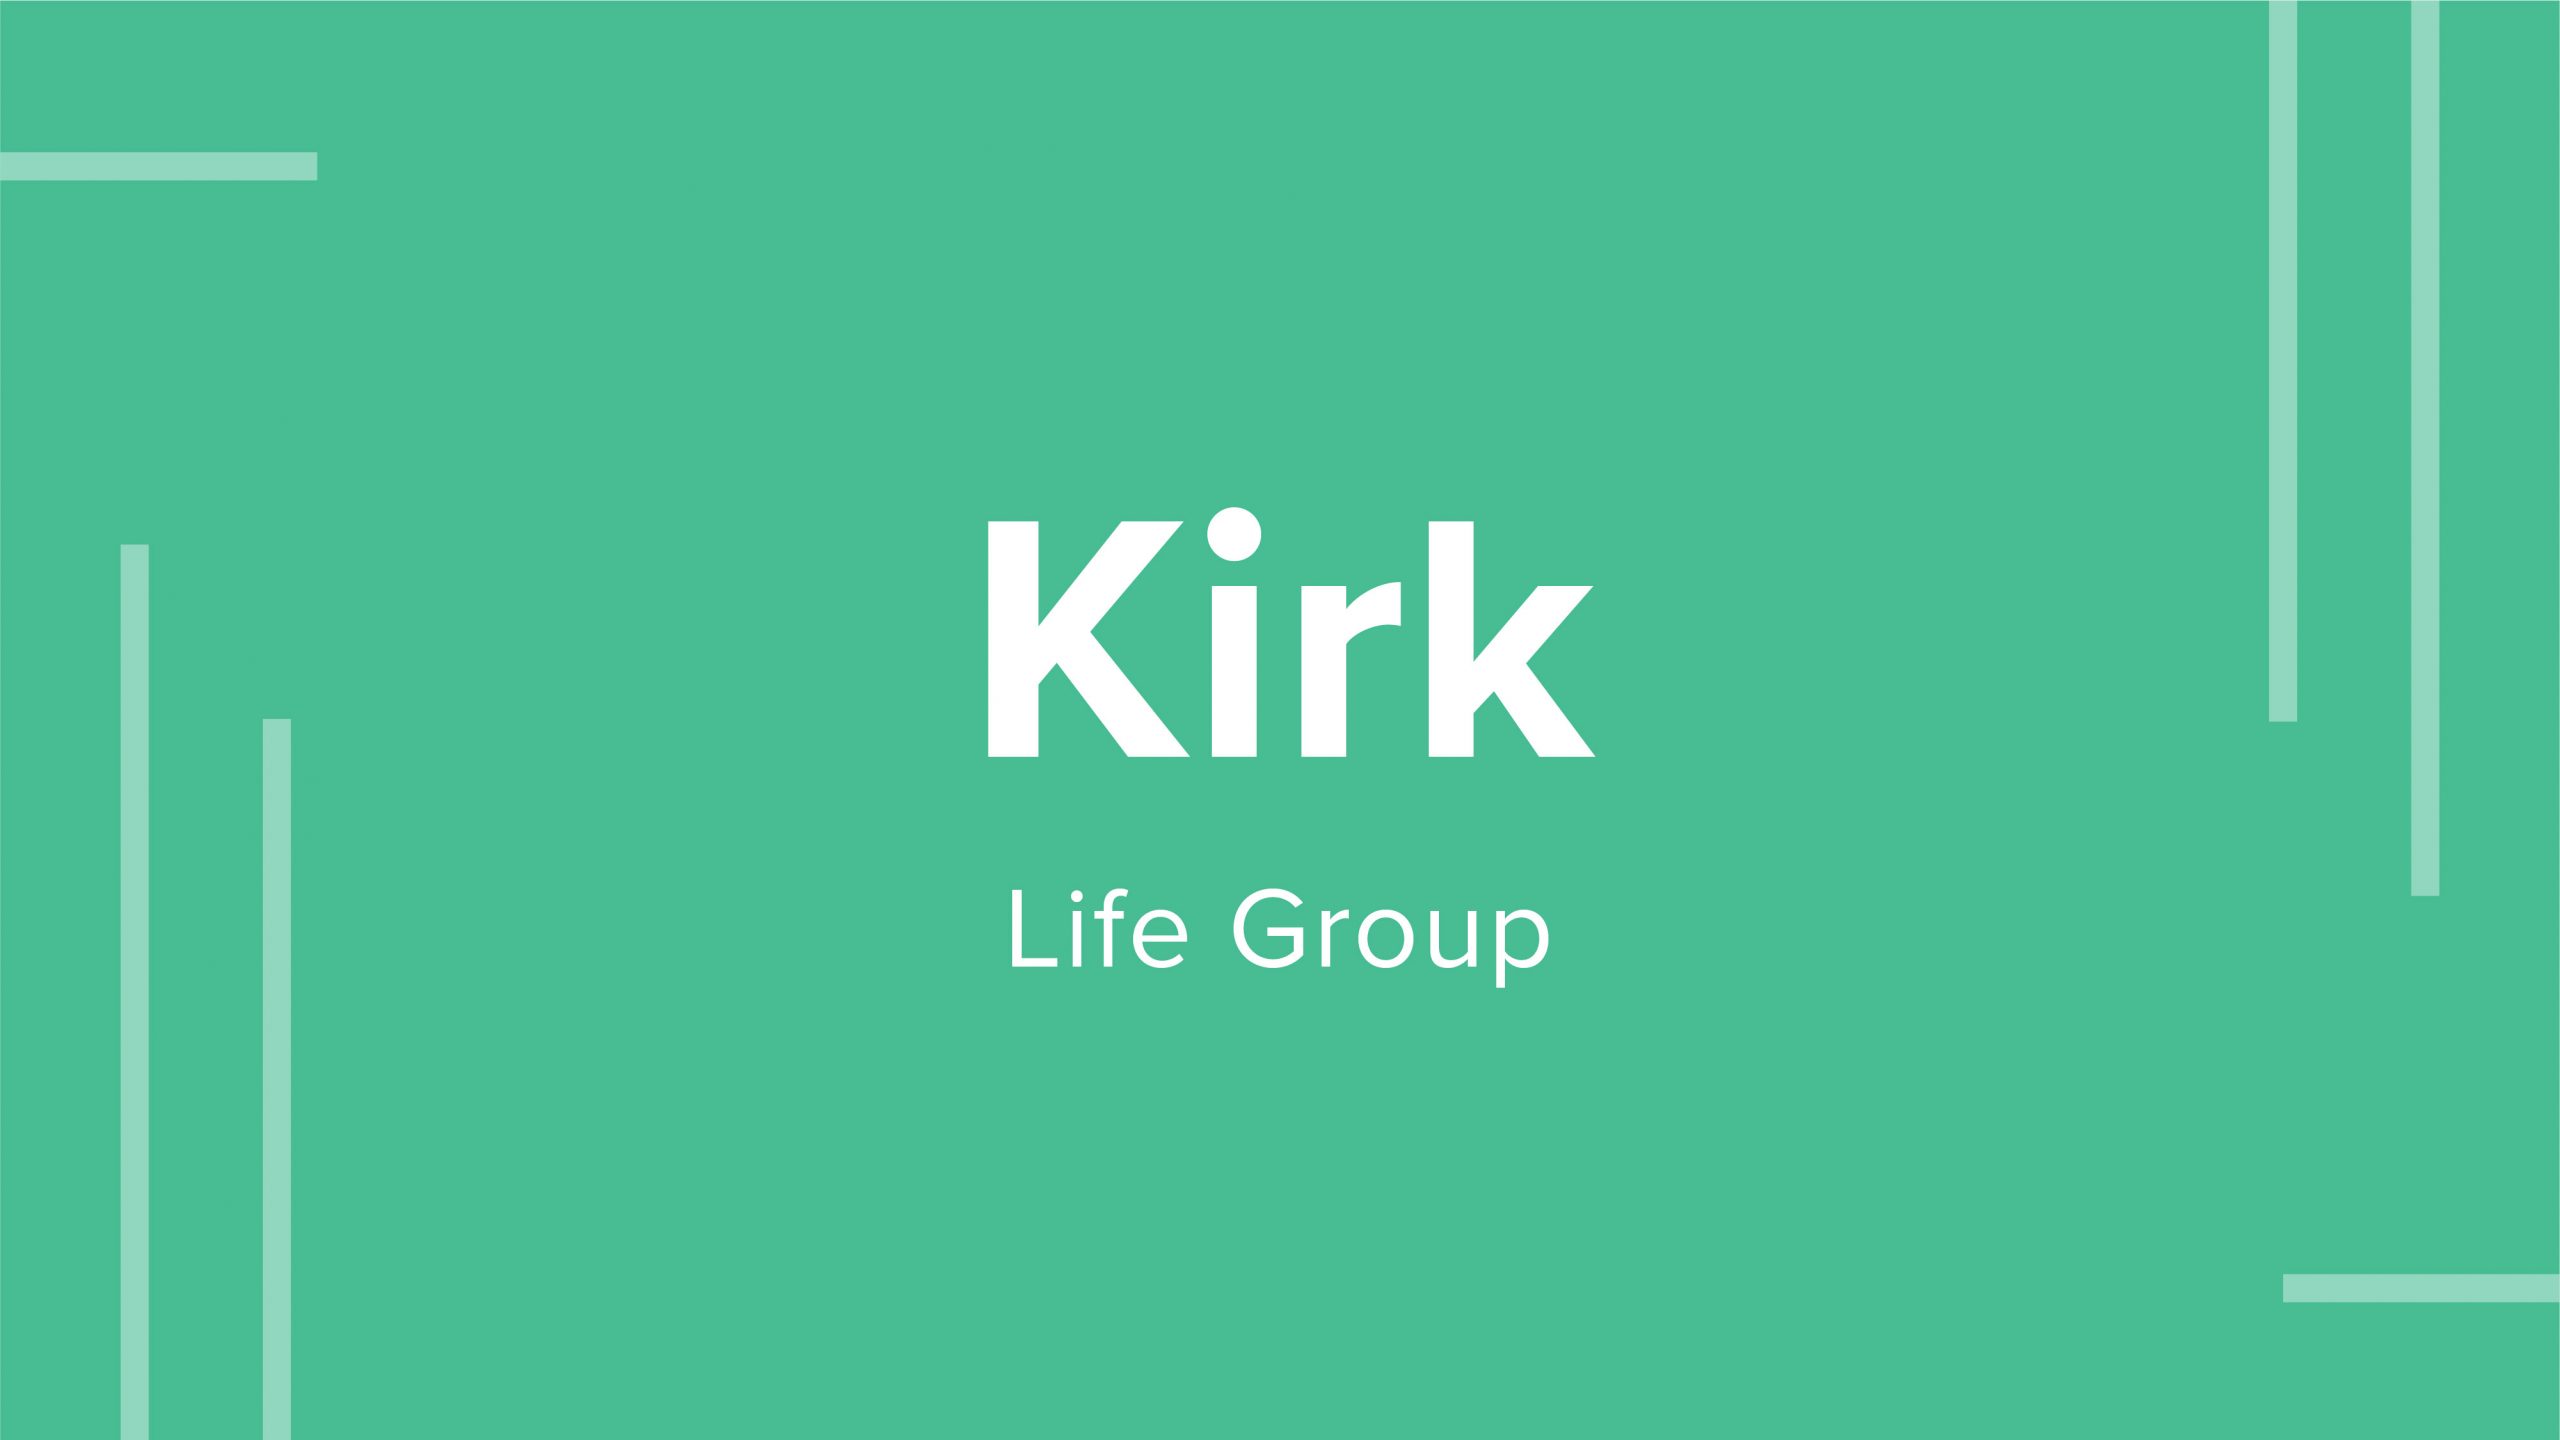 Kirk Life Group